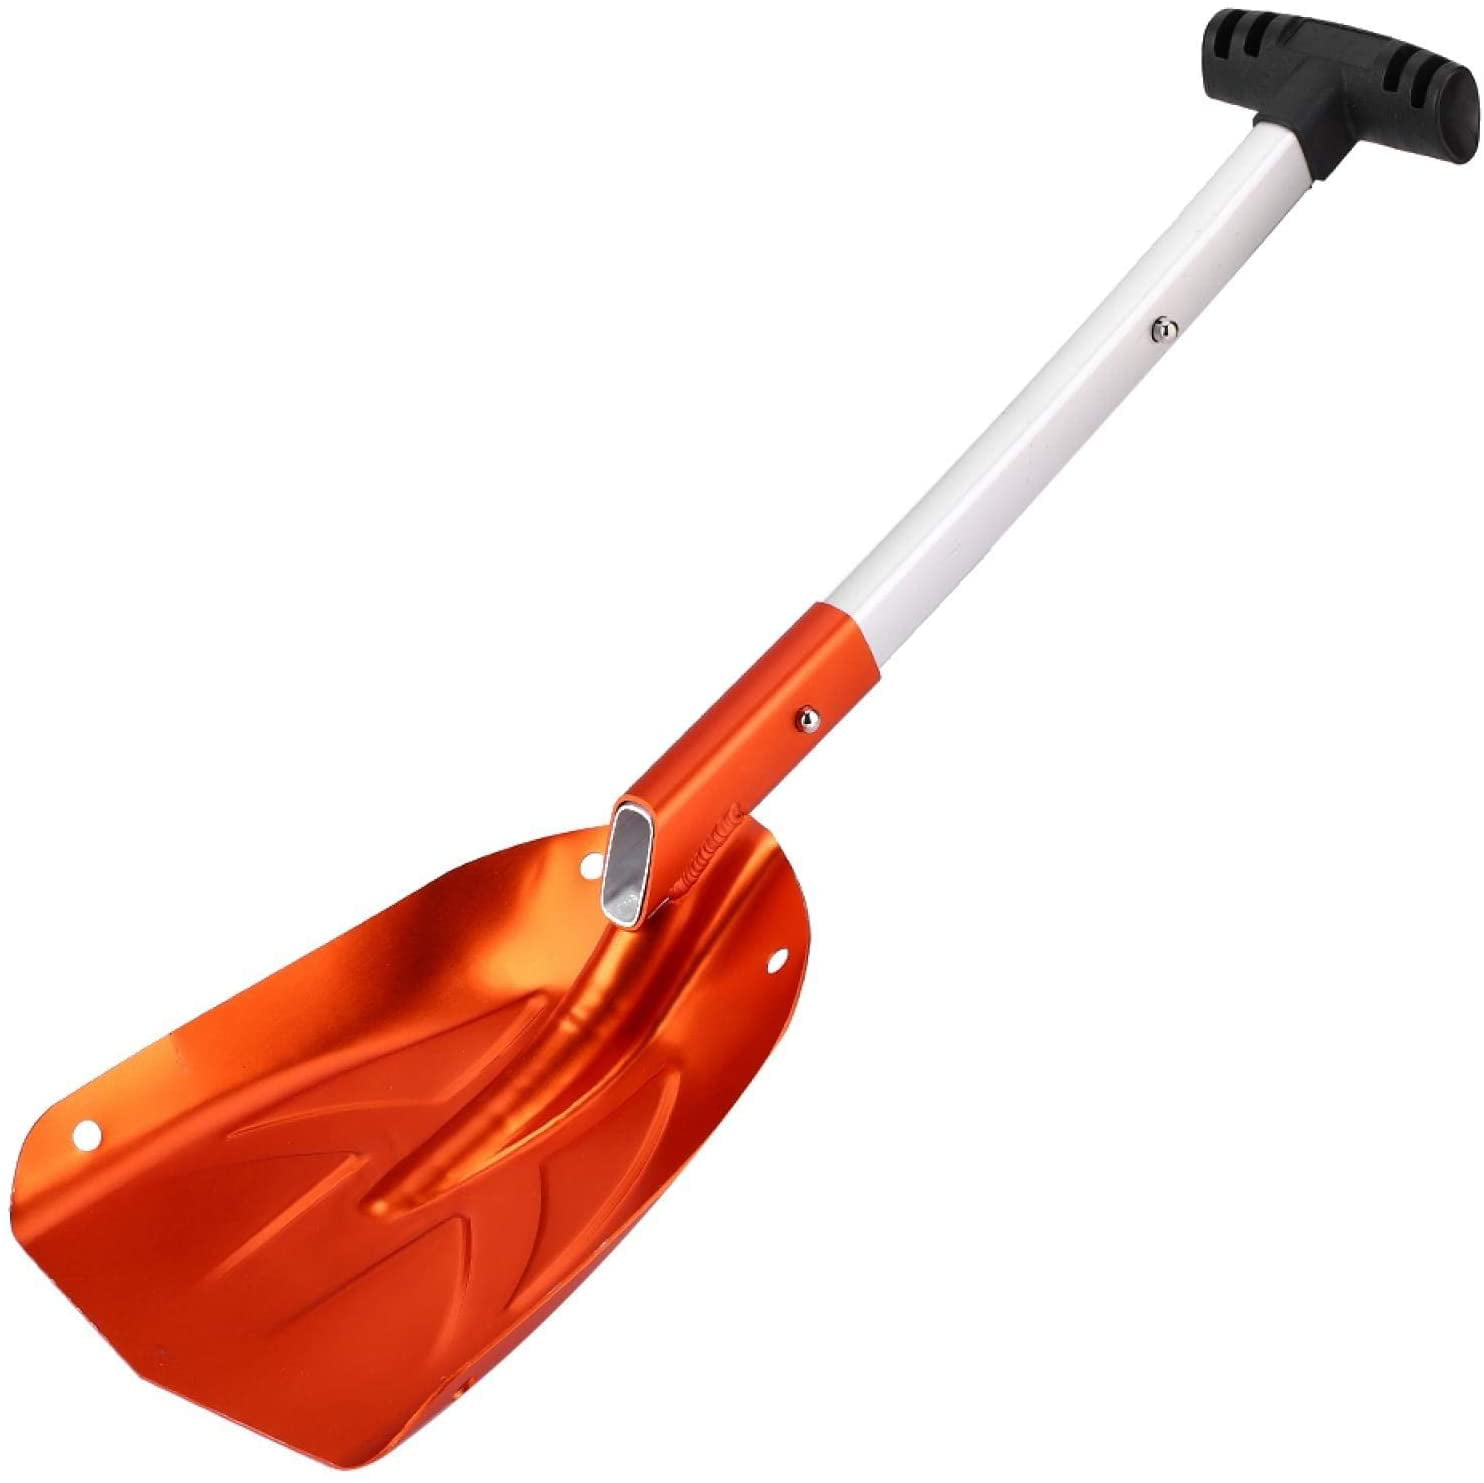 Extendable Snow Shovel Compact Emergency Winter Lightweight Folding Bluecol 